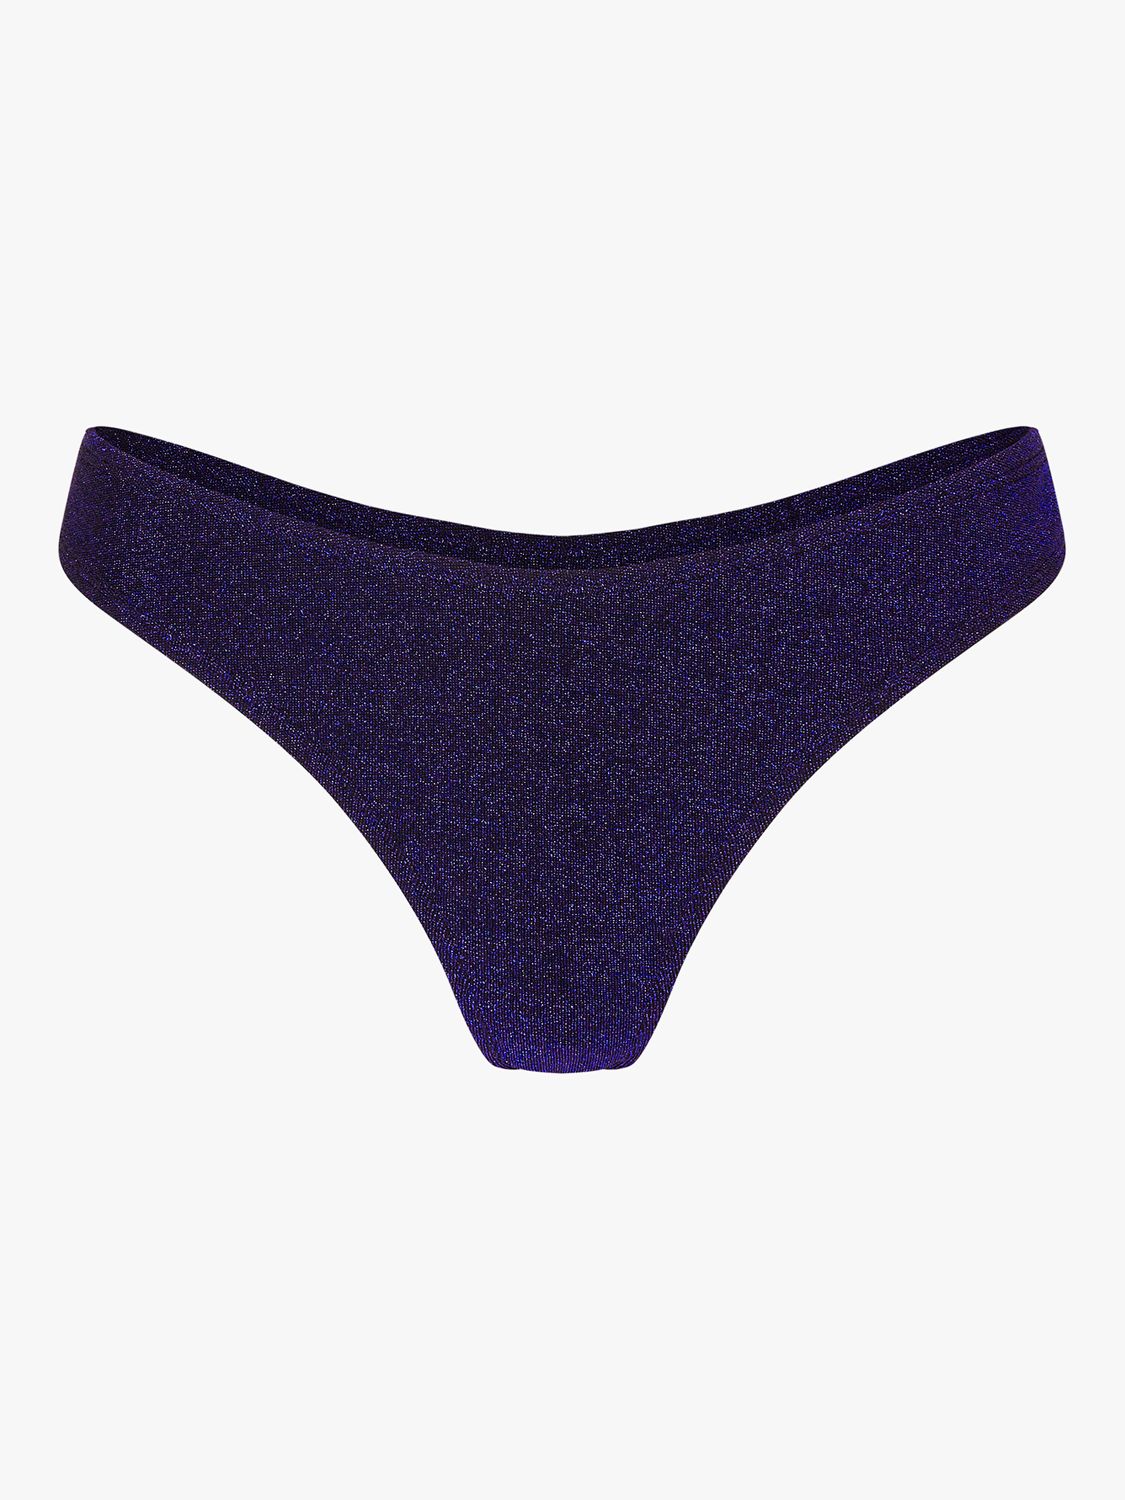 Accessorize Shimmer Bikini Bottoms, Dark Blue, 16